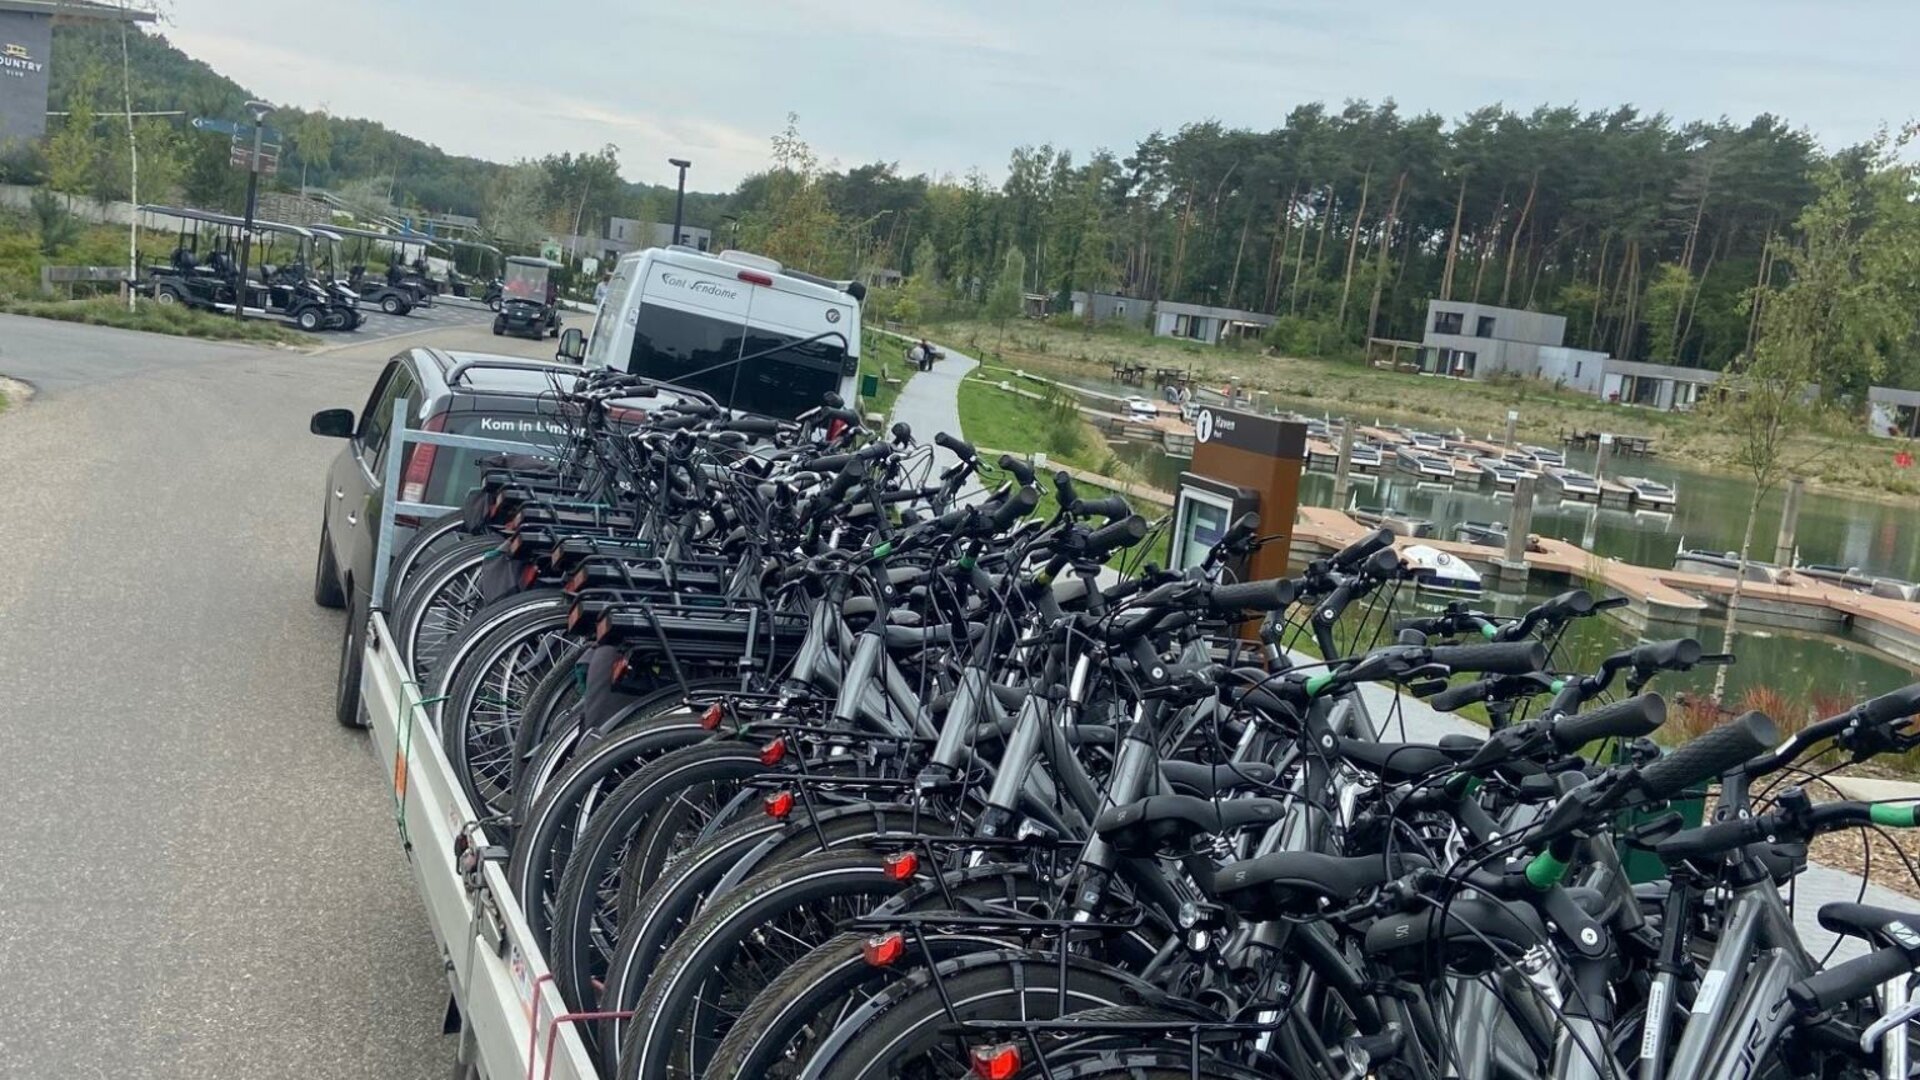 Bike & Outdoor Sport Center - Aanhanger met 33 E-bikes